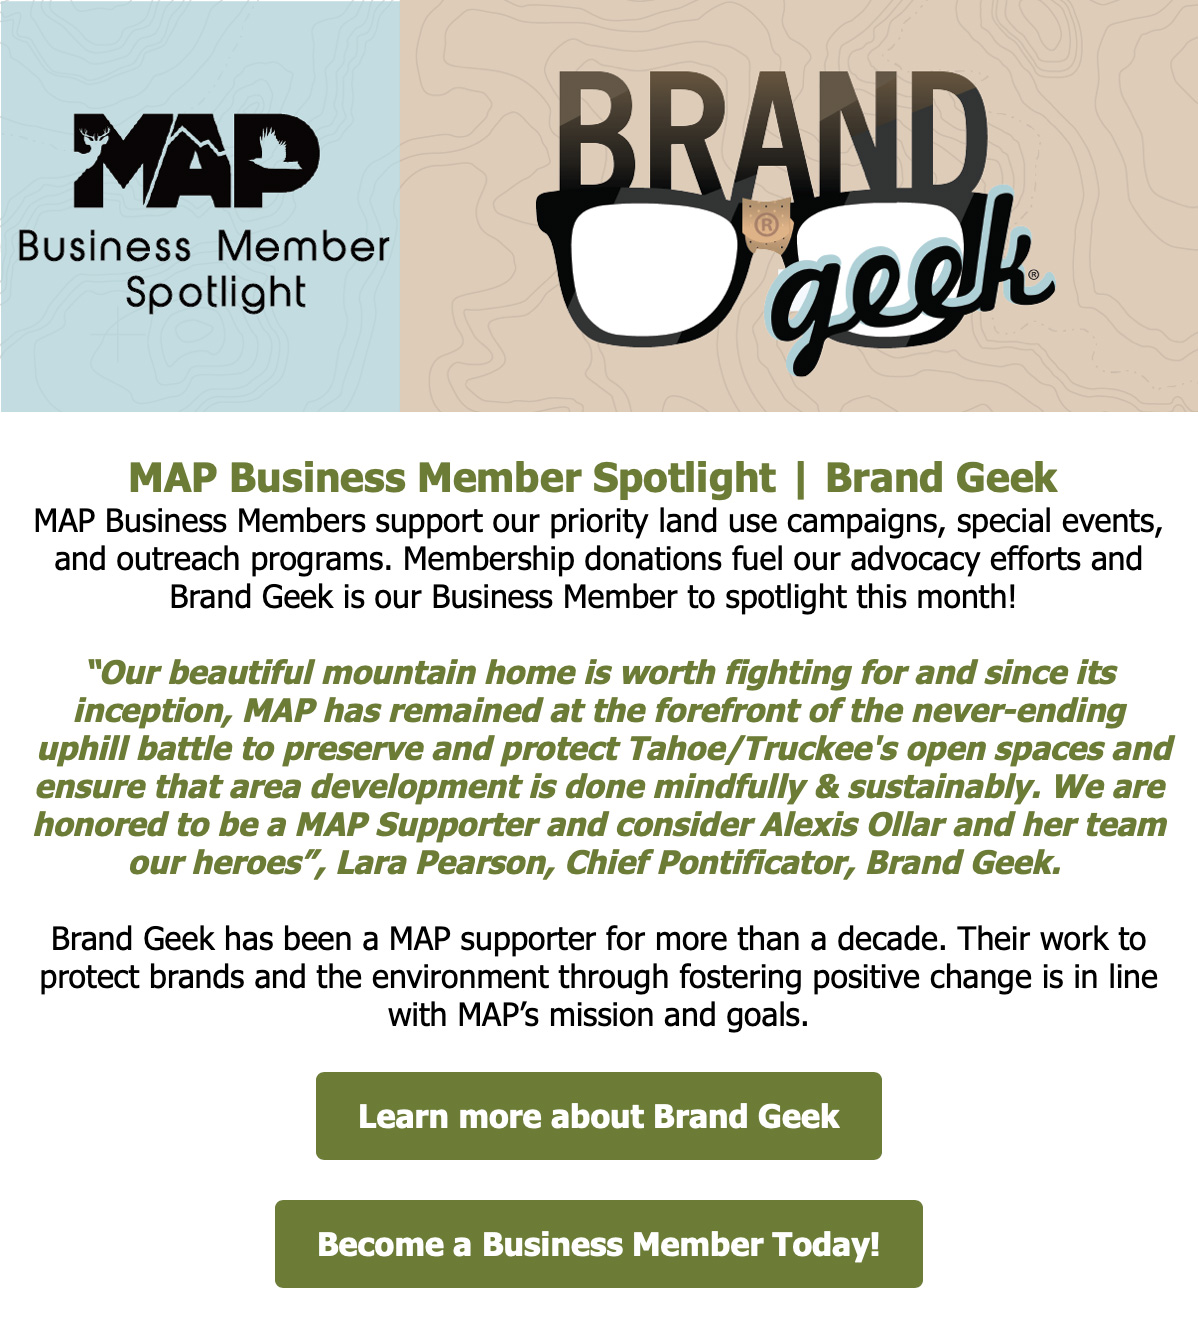 MAP Business Member Spotlight on Brandgeek